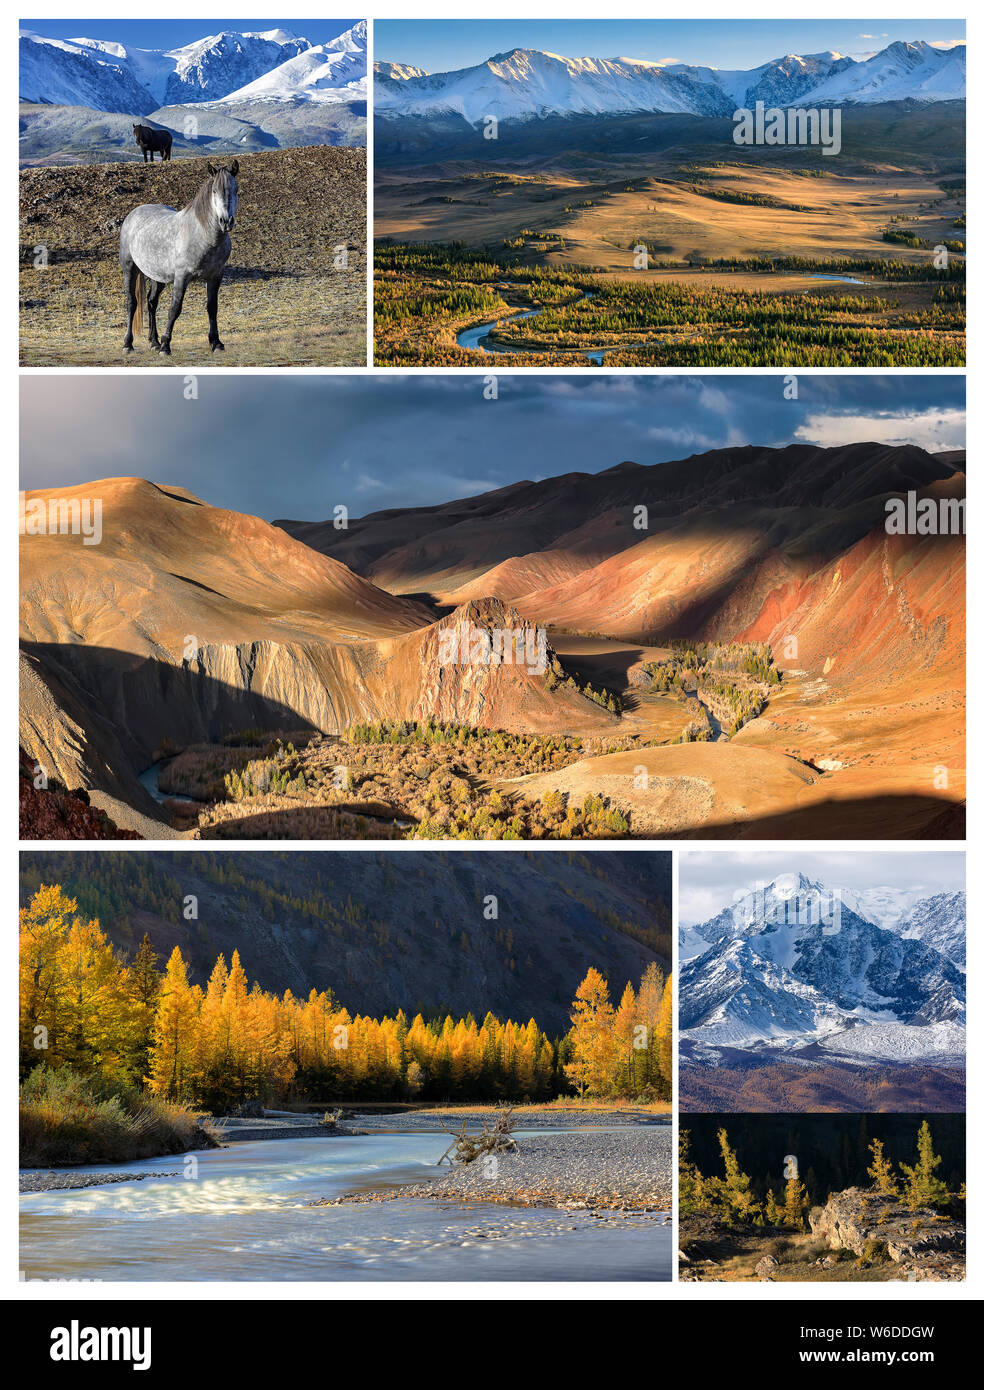 Collage de photos. Paysage d'automne avec le Nord Chuya, crête des montagnes de la vallée de la rivière Kyzylshin et montagnes de l'Altaï, les chevaux sauvages et les mélèzes Banque D'Images